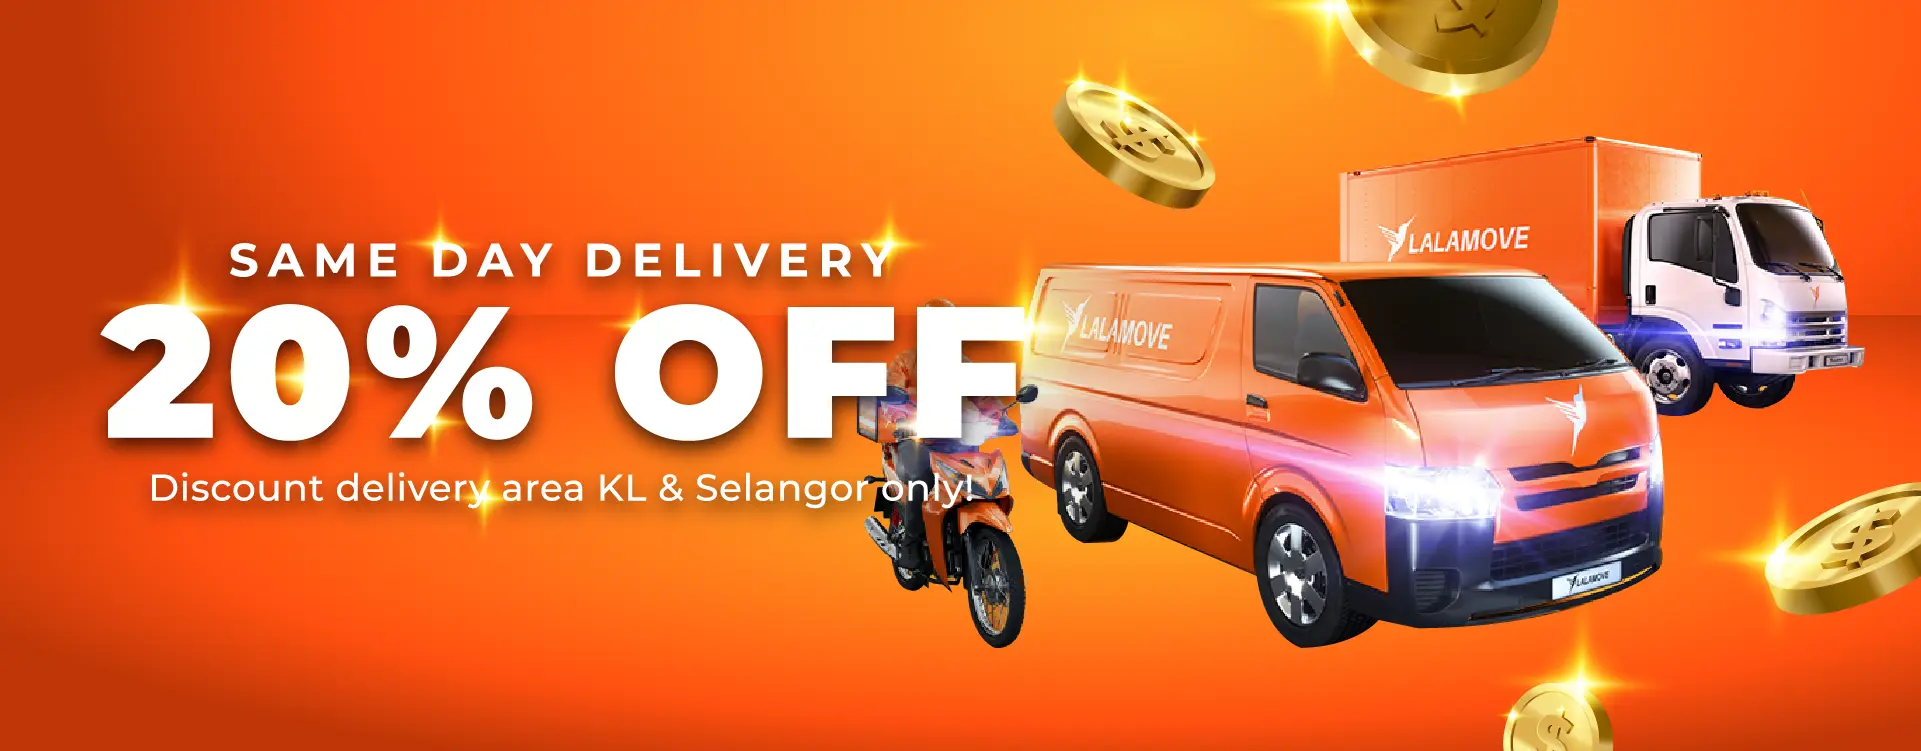 Same Day Delivery 20% Off KL & Selangor